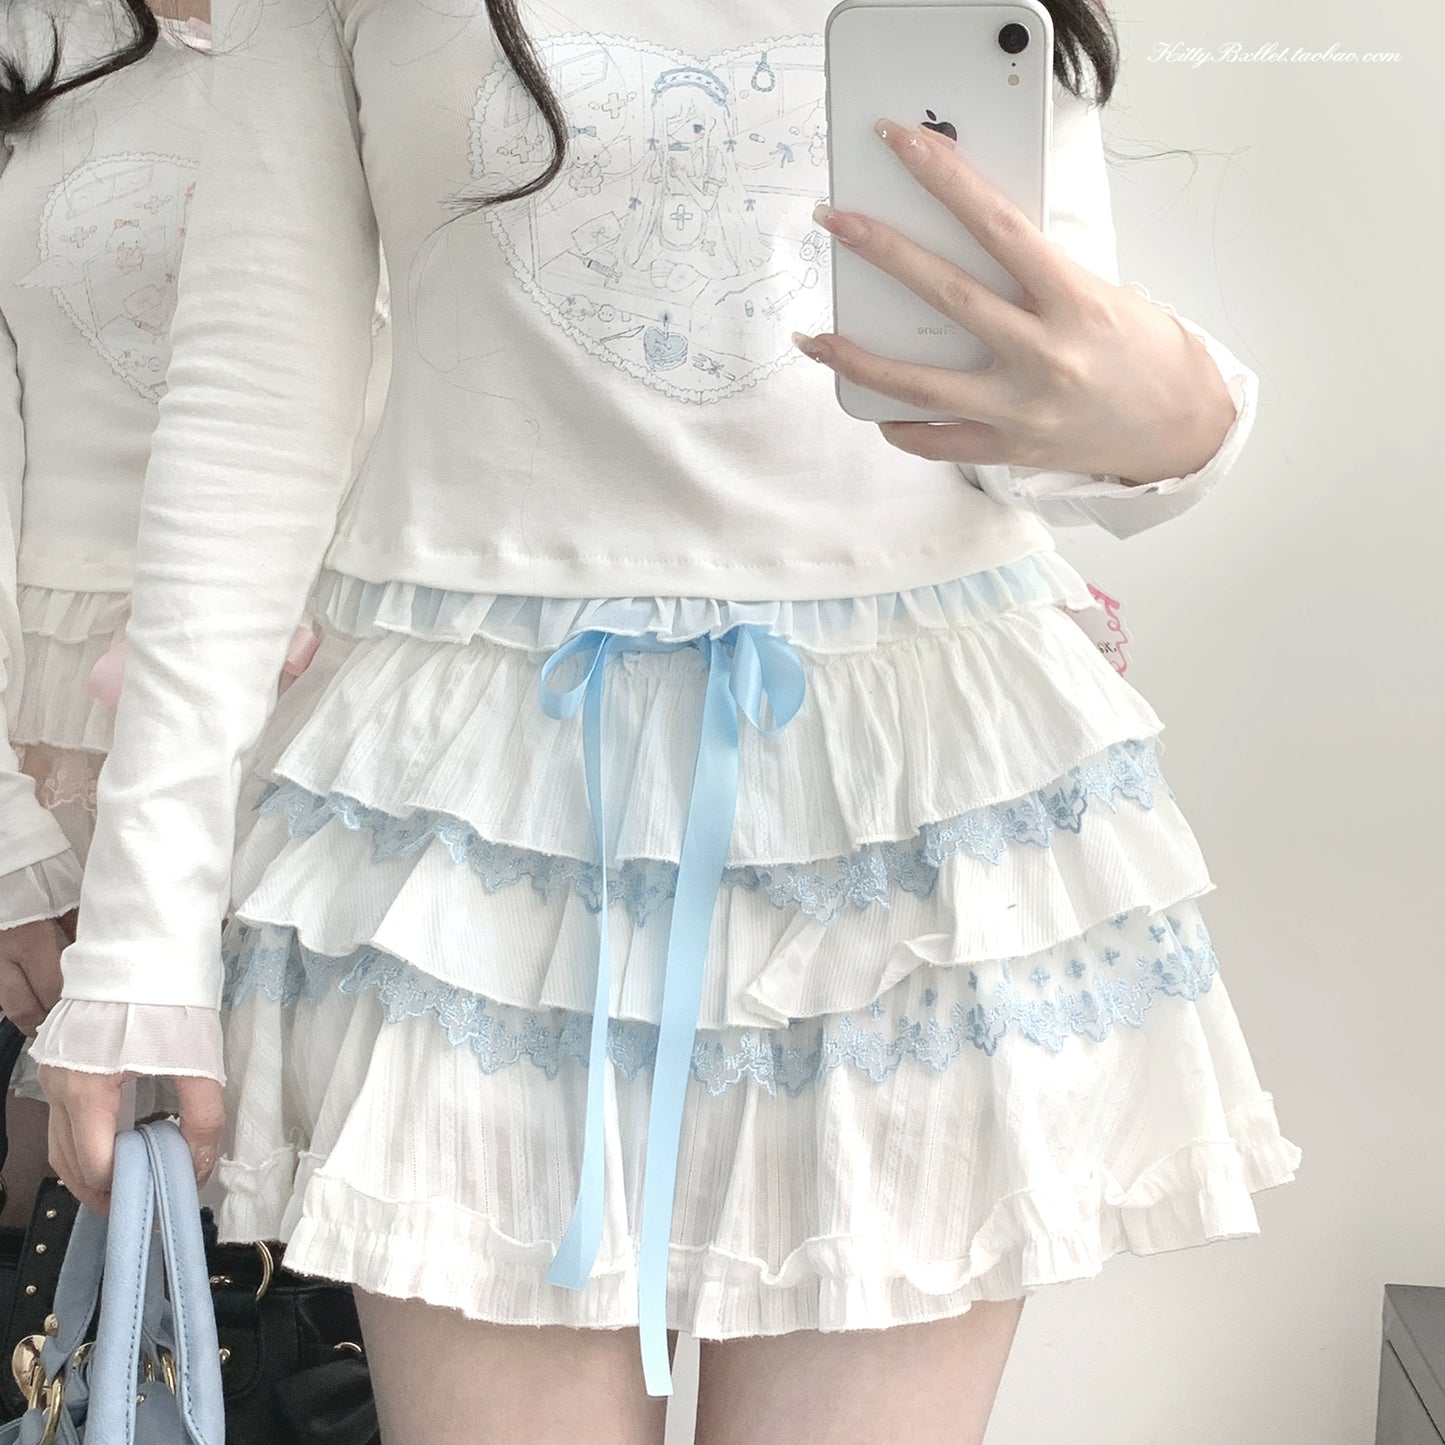 Ryousangata Skirt Lace Cake Skirt And Apron Set 36790:536144